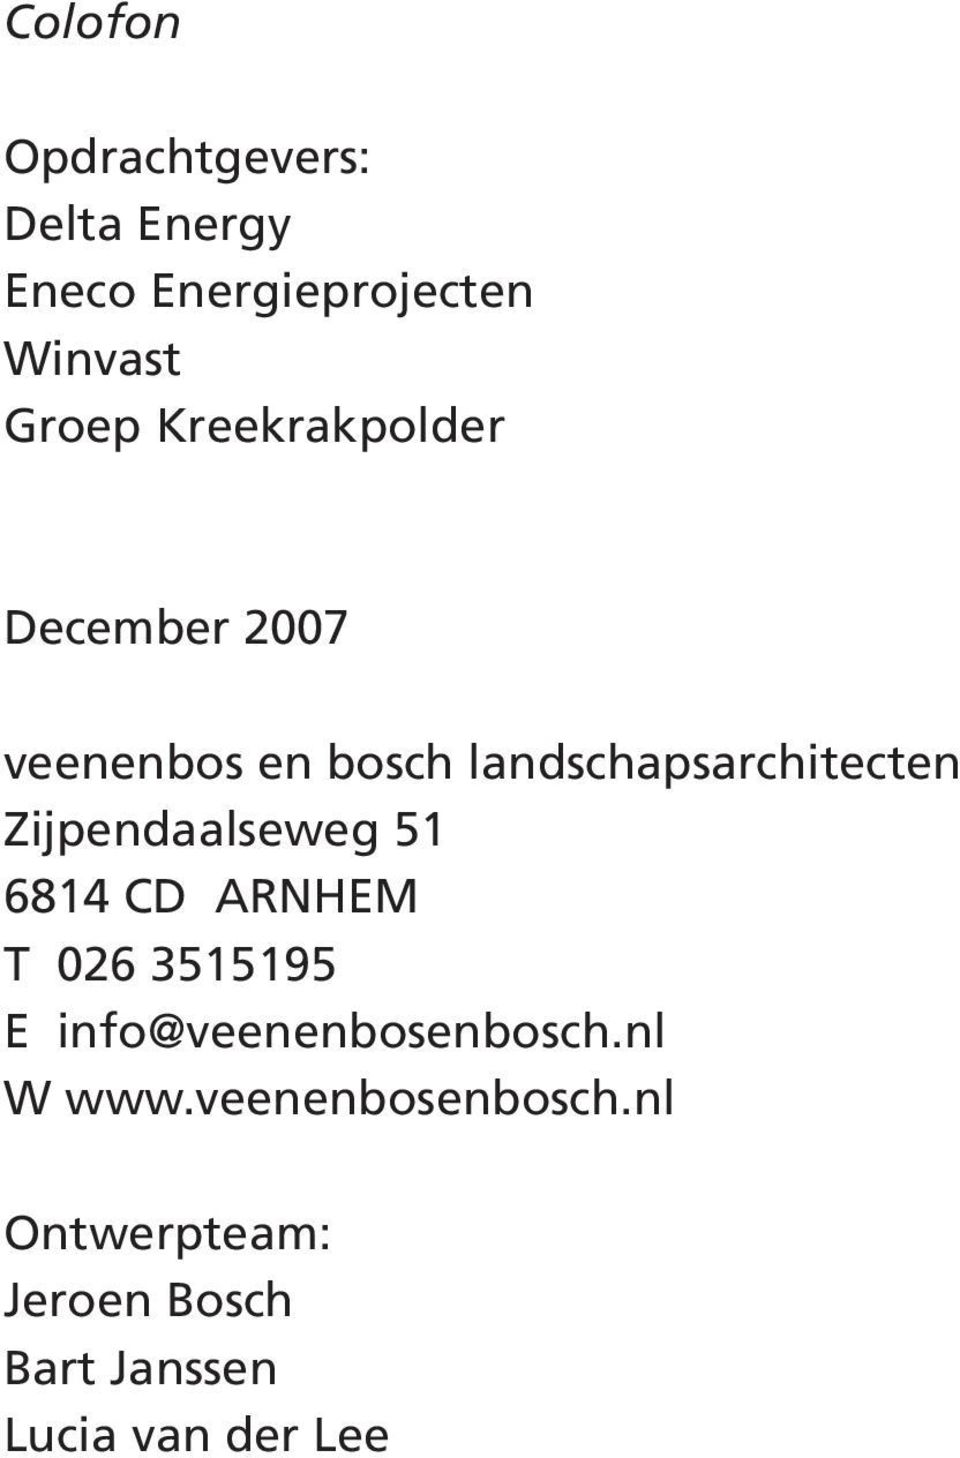 Zijpendaalseweg 51 6814 CD ARNHEM T 026 3515195 E info@veenenbosenbosch.